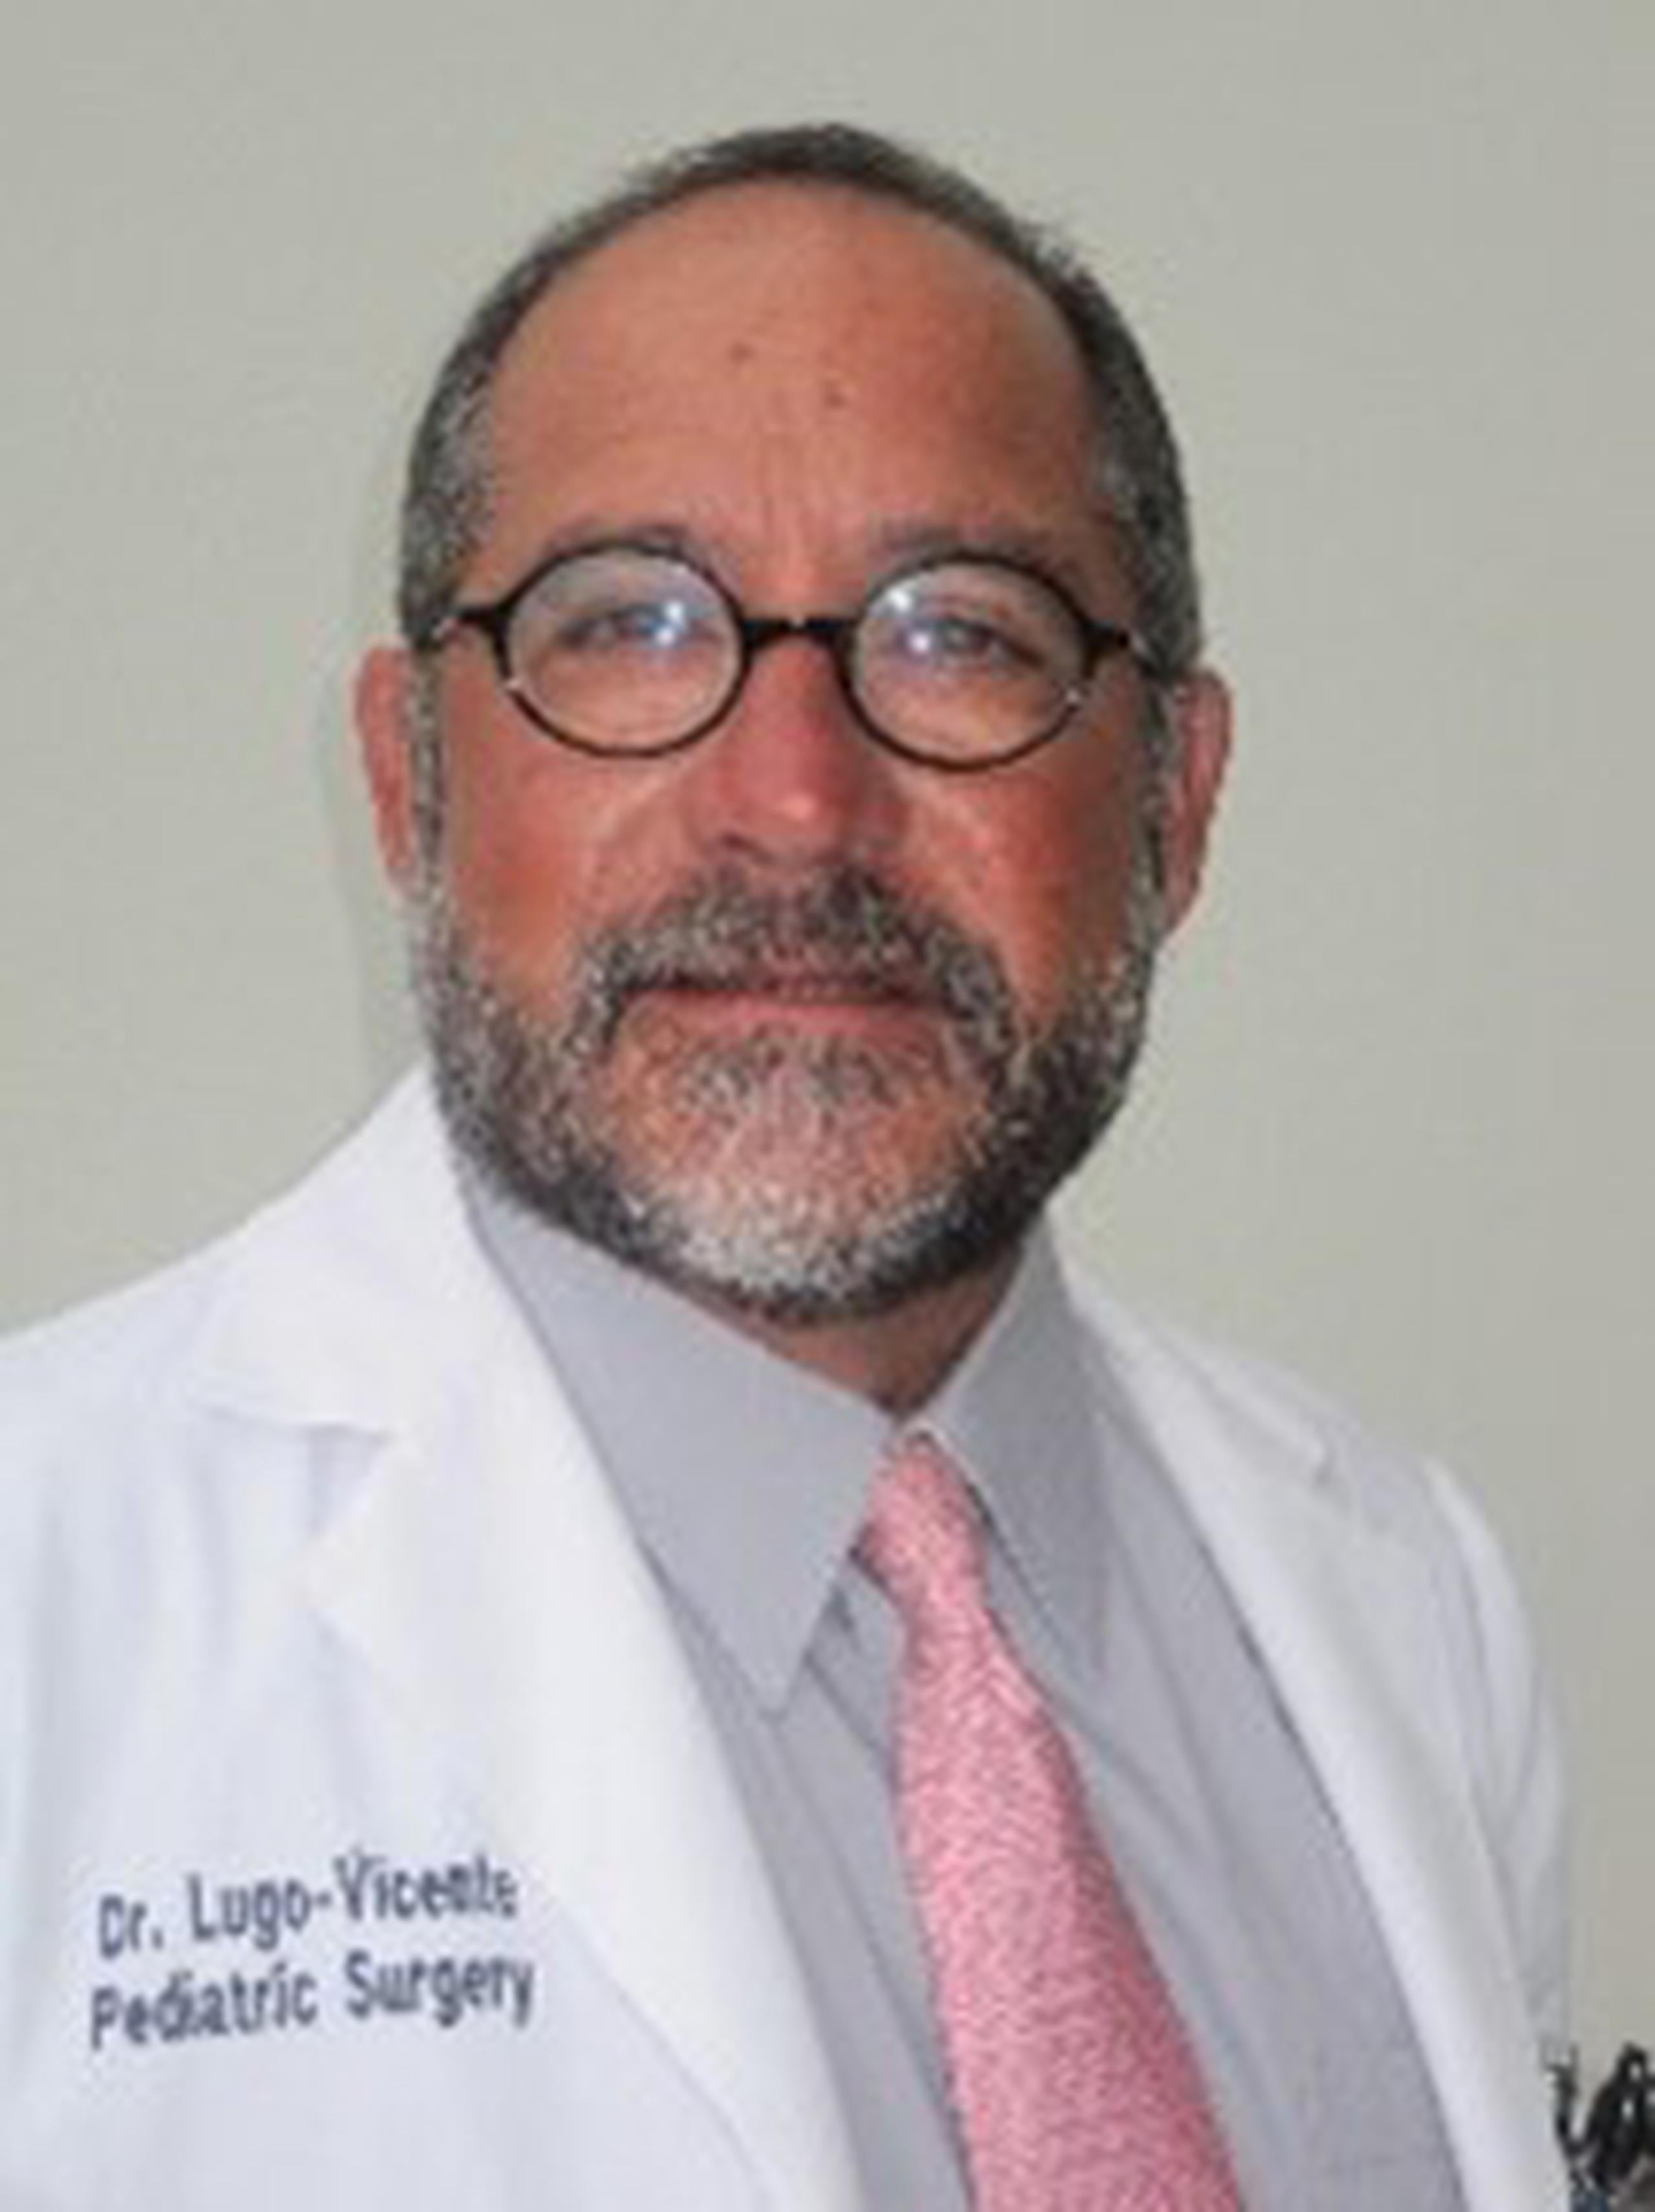 Humberto Lugo Vicente, Cirujano pediátrico